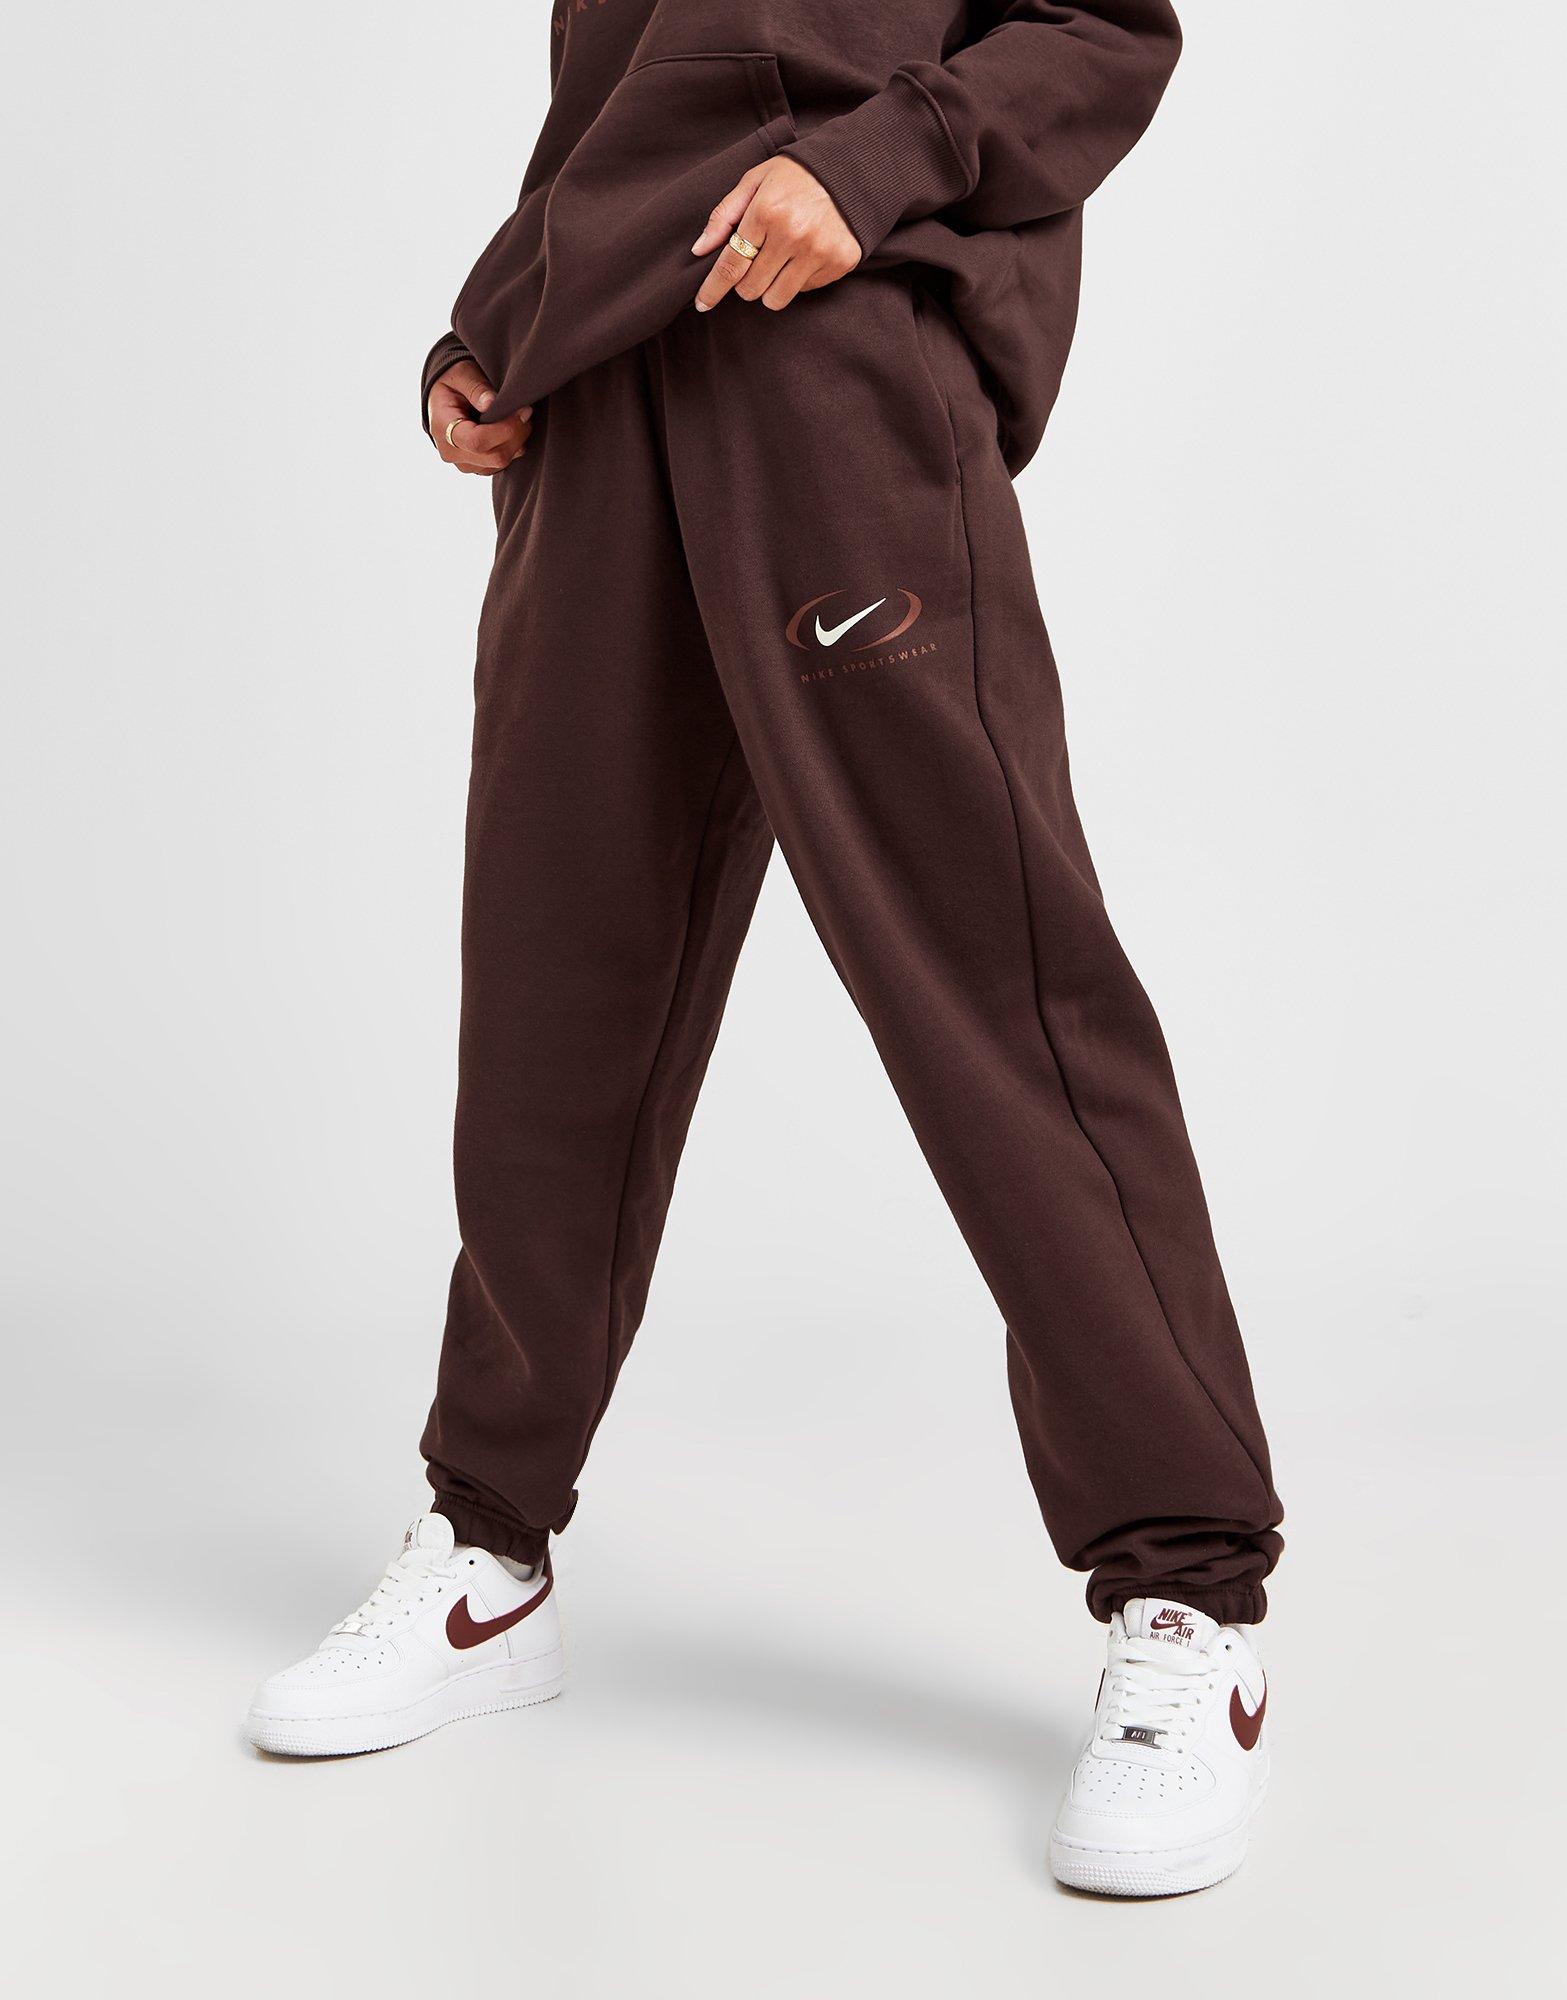 Nike Plus mini swoosh oversized jogger in earth brown